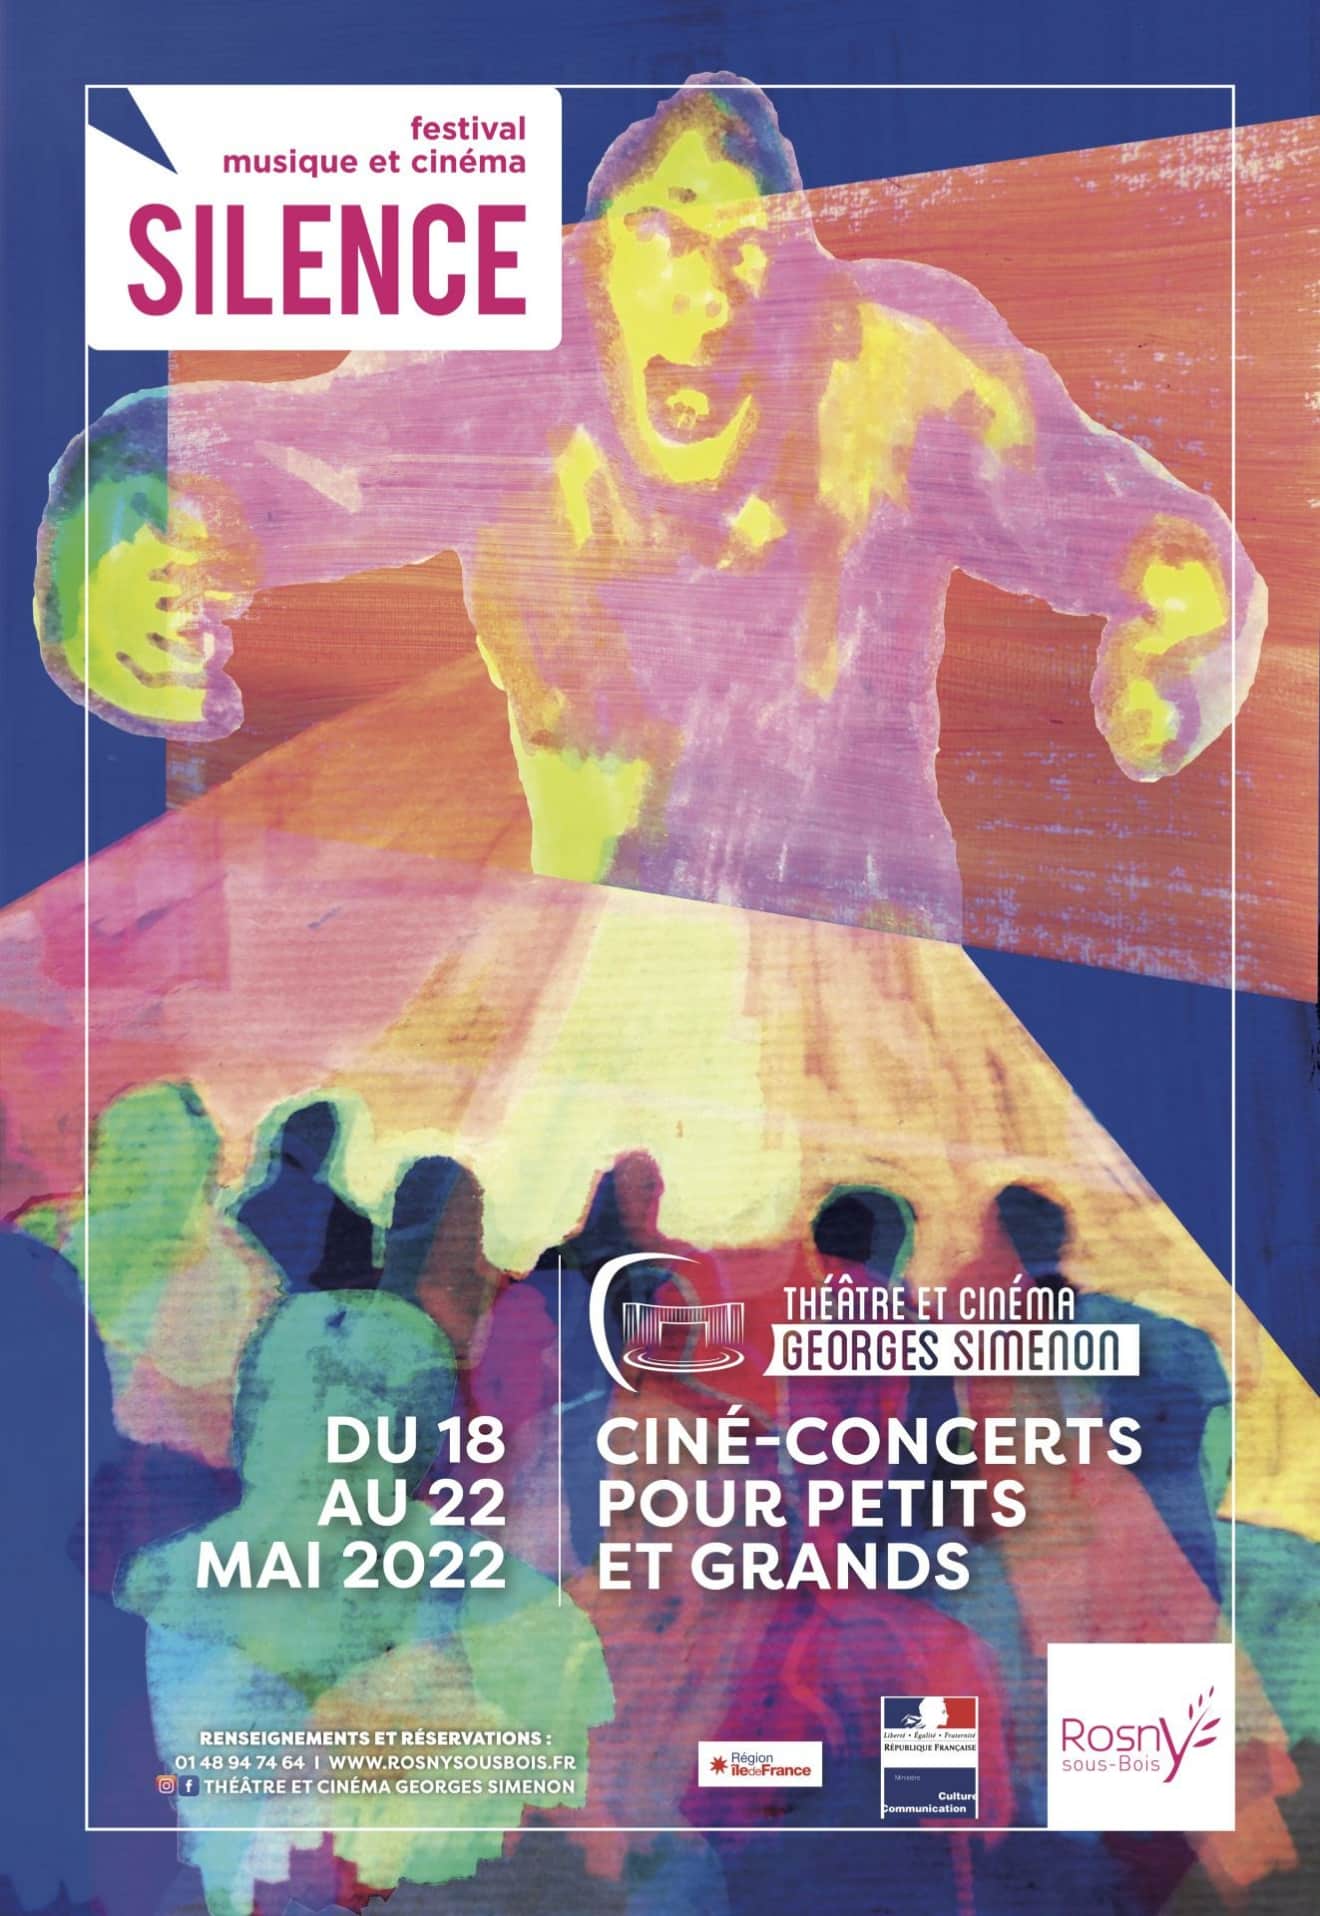 Le Festival Silence 2022 du Théâtre et Cinéma Georges Simenon de Rosny-sous-Bois